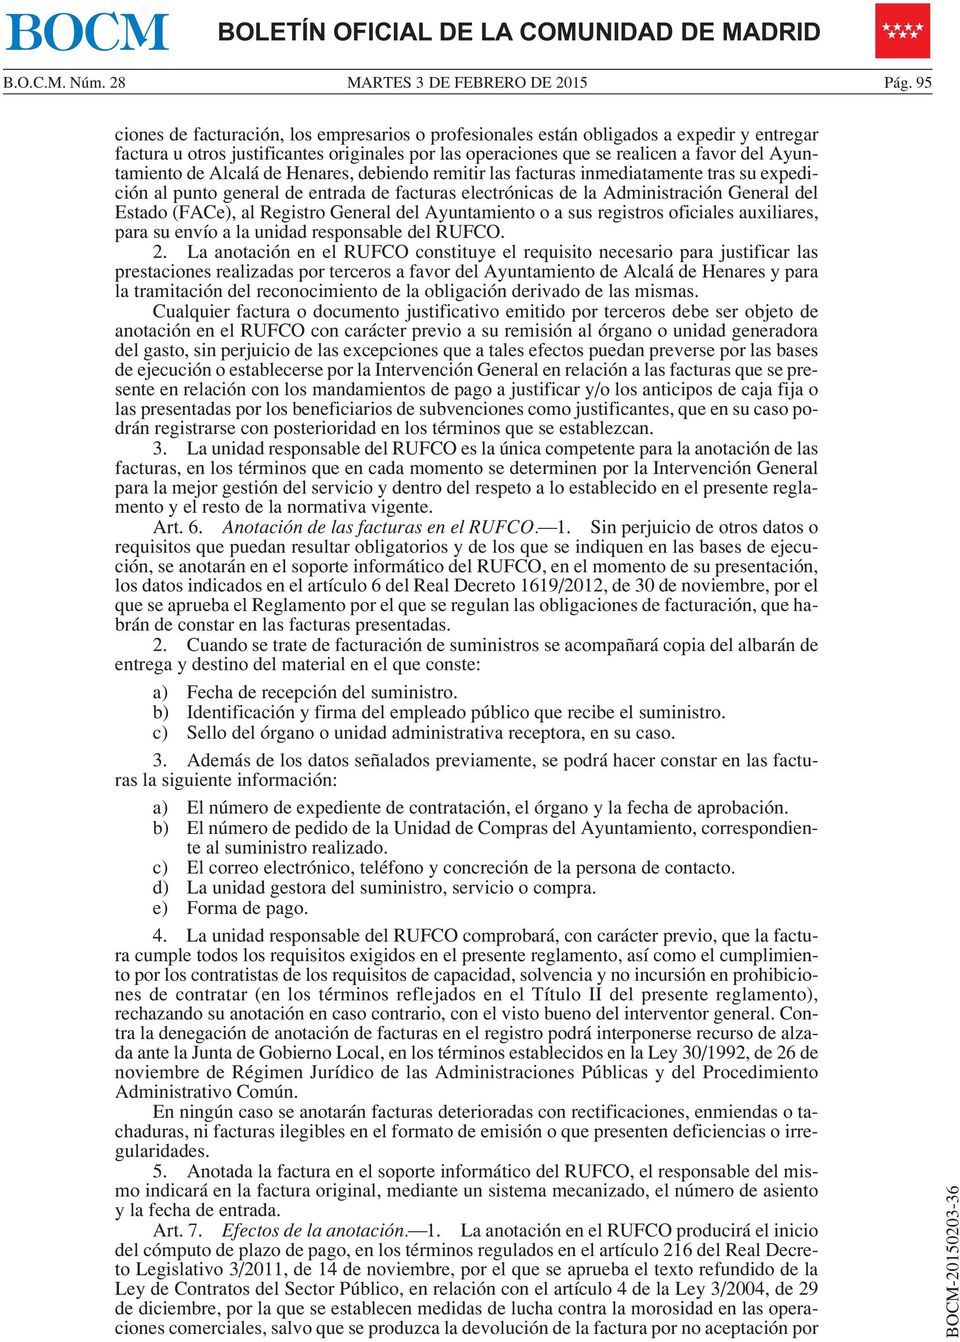 Alcalá de Henares, debiendo remitir las facturas inmediatamente tras su expedición al punto general de entrada de facturas electrónicas de la Administración General del Estado (FACe), al Registro